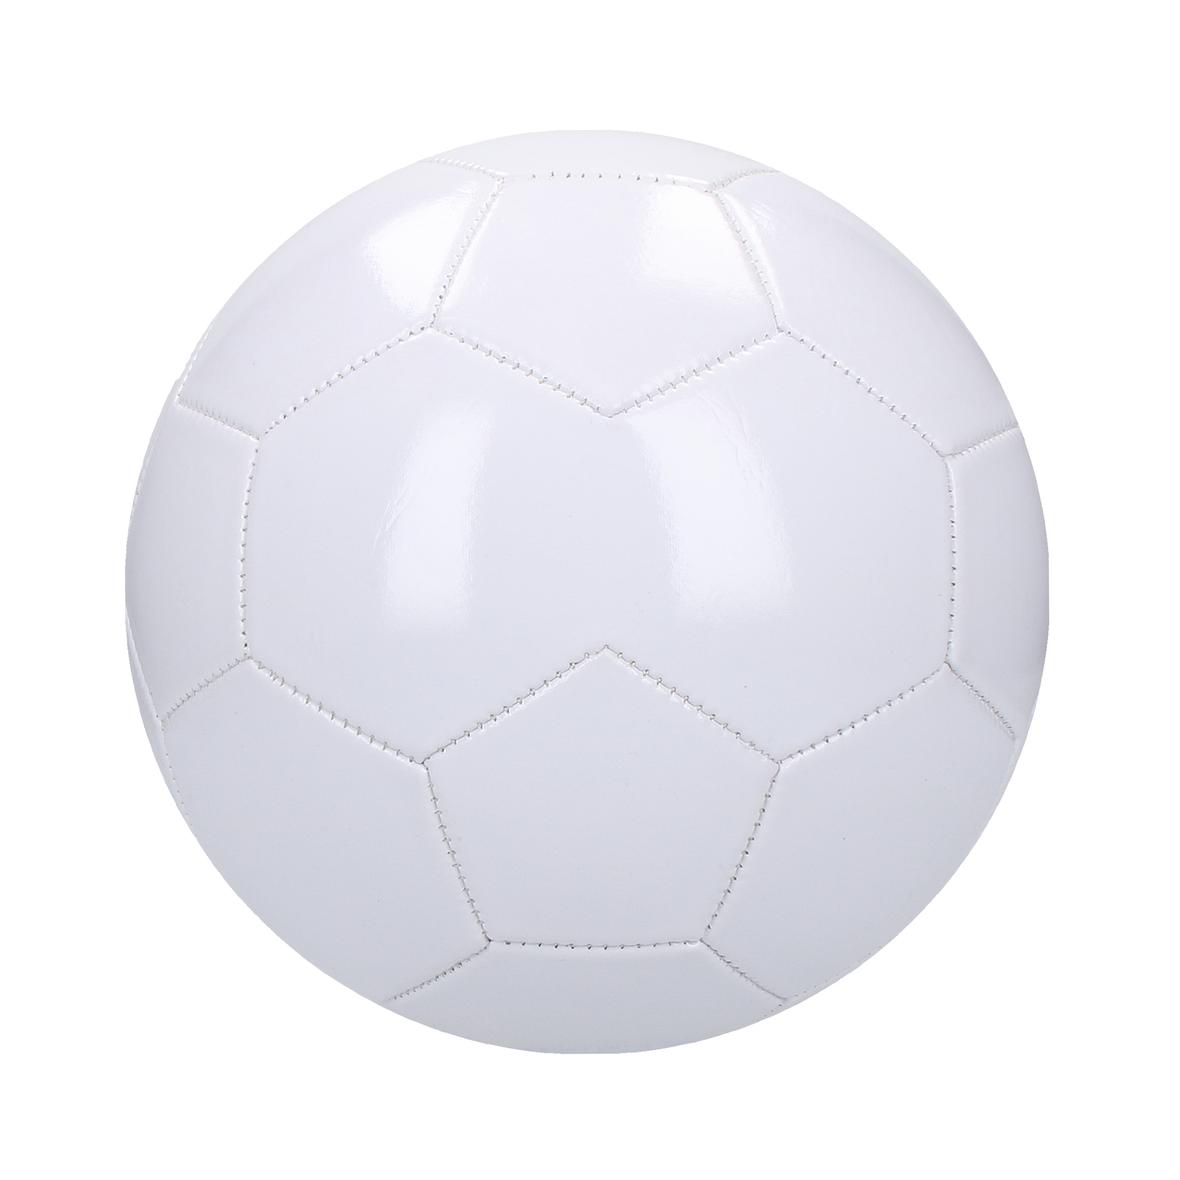 Balón de fútbol tamaño 5 de 3 capas con vejiga de PVC y látex - Artés